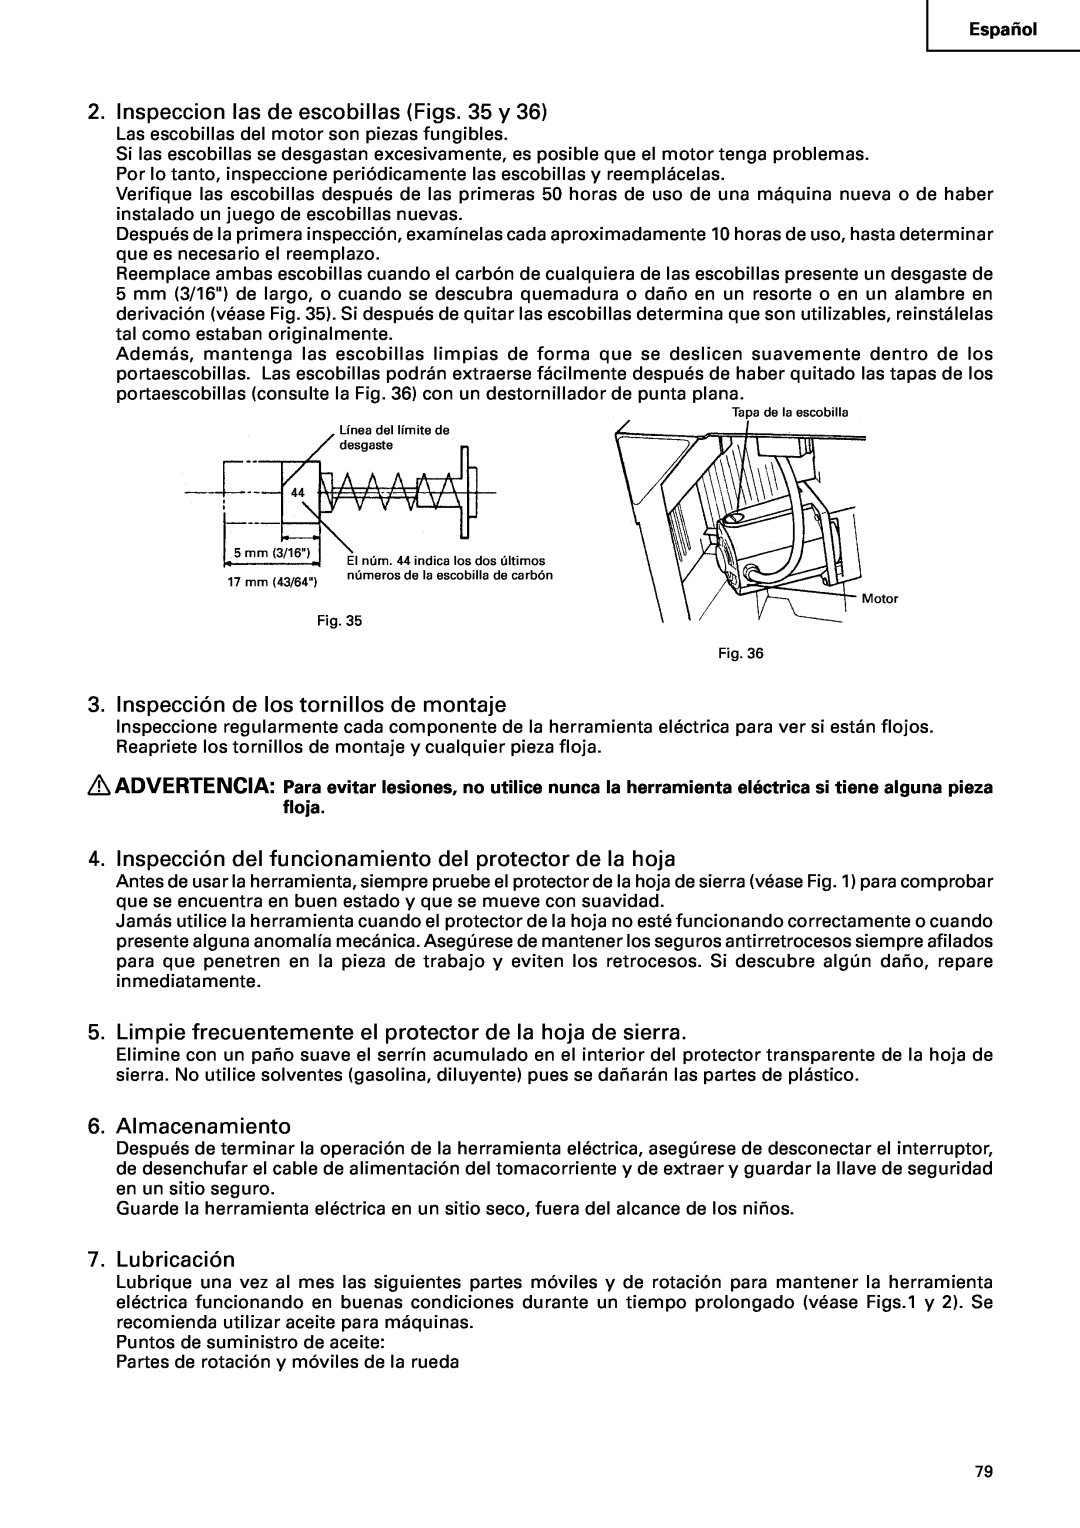 Hitachi C10RA2 Inspeccion las de escobillas Figs. 35 y, Inspección de los tornillos de montaje, Almacenamiento 